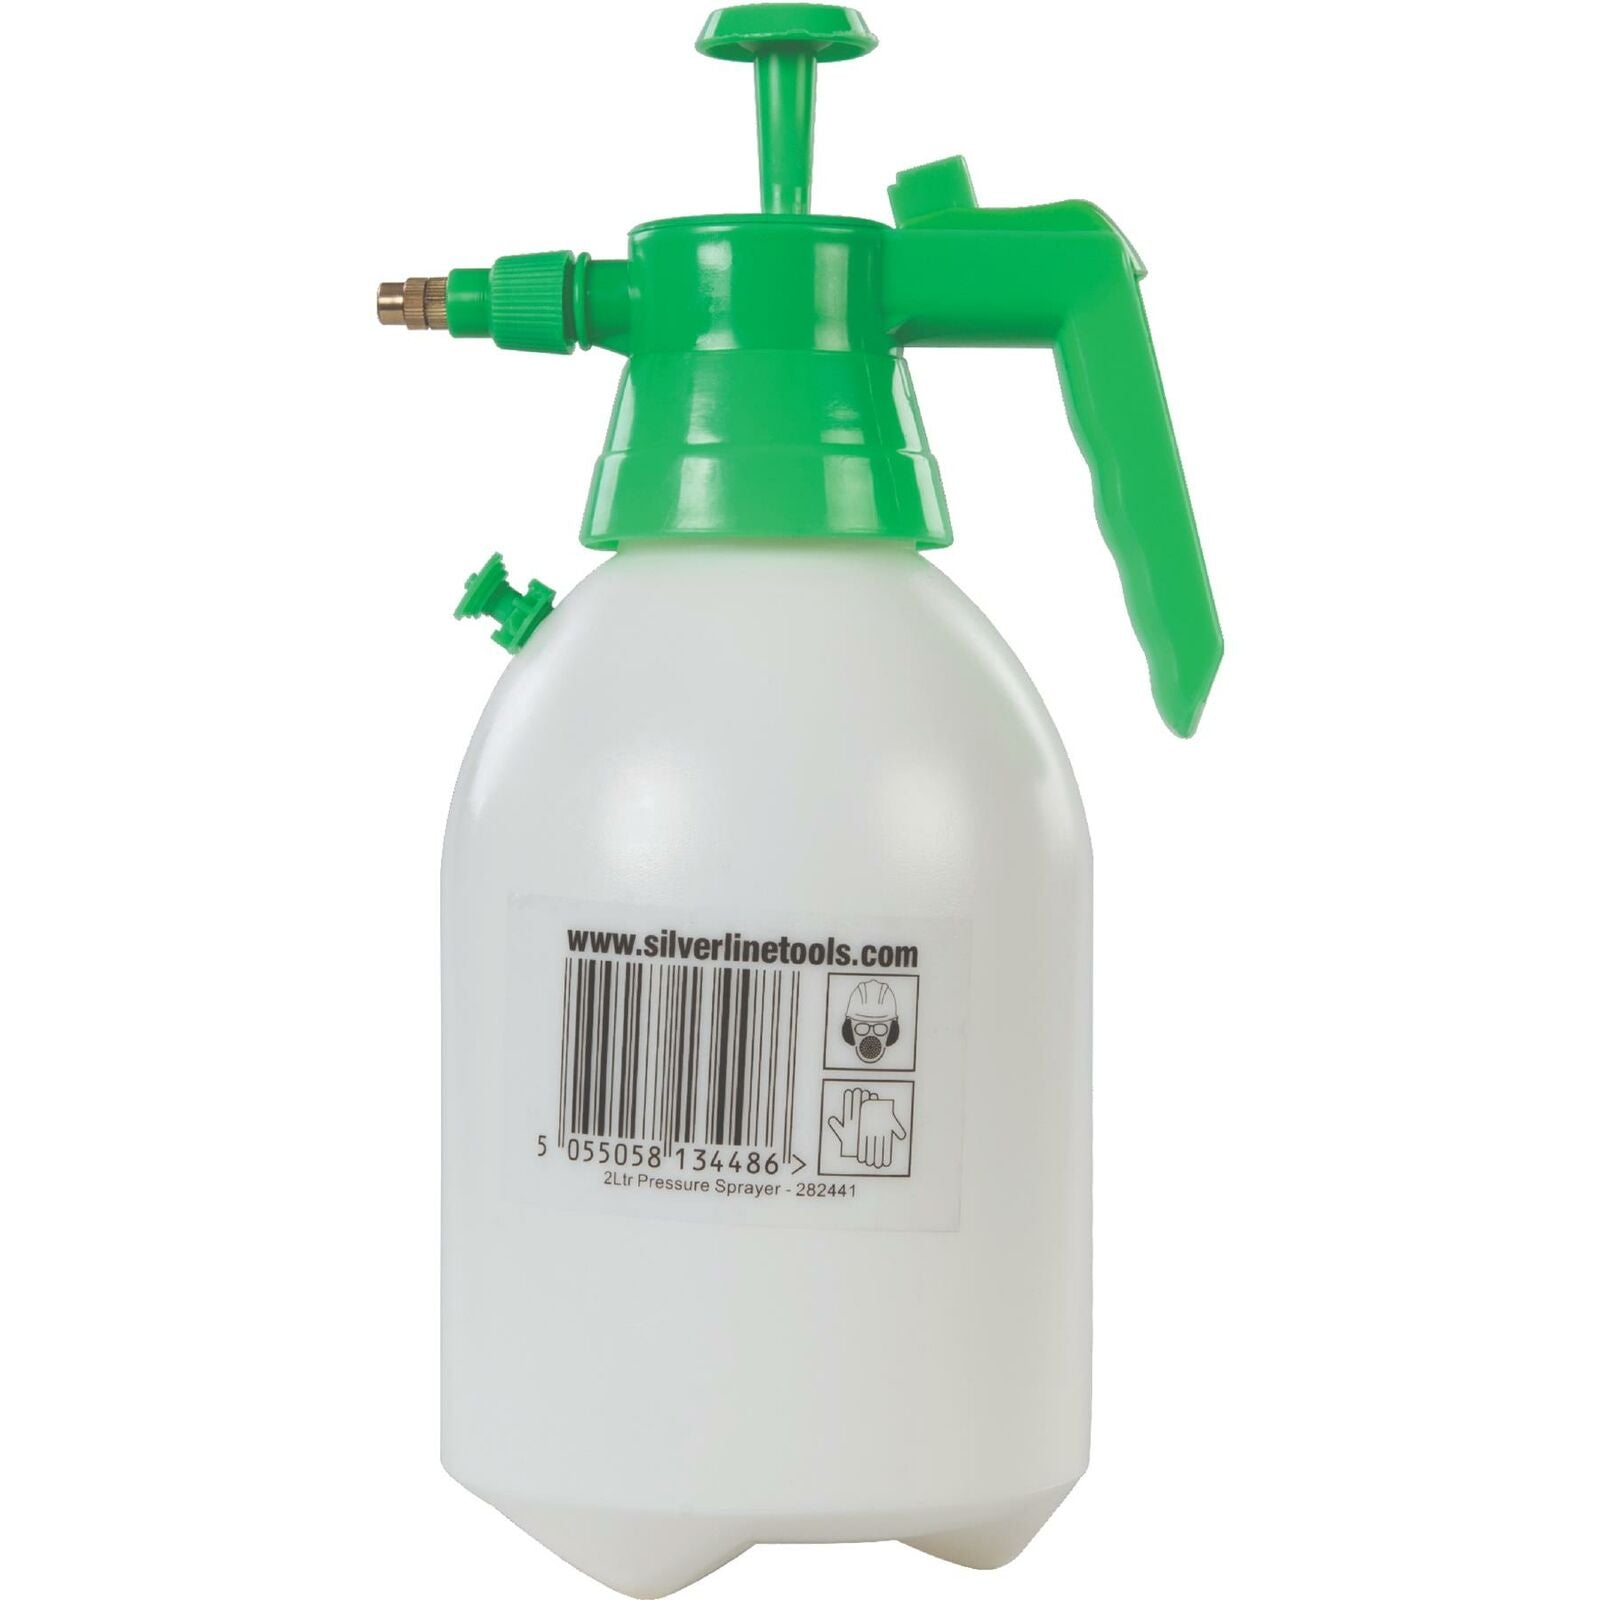 Silverline 2 Litre Adjustable Water Sprayer Garden Pump Spray